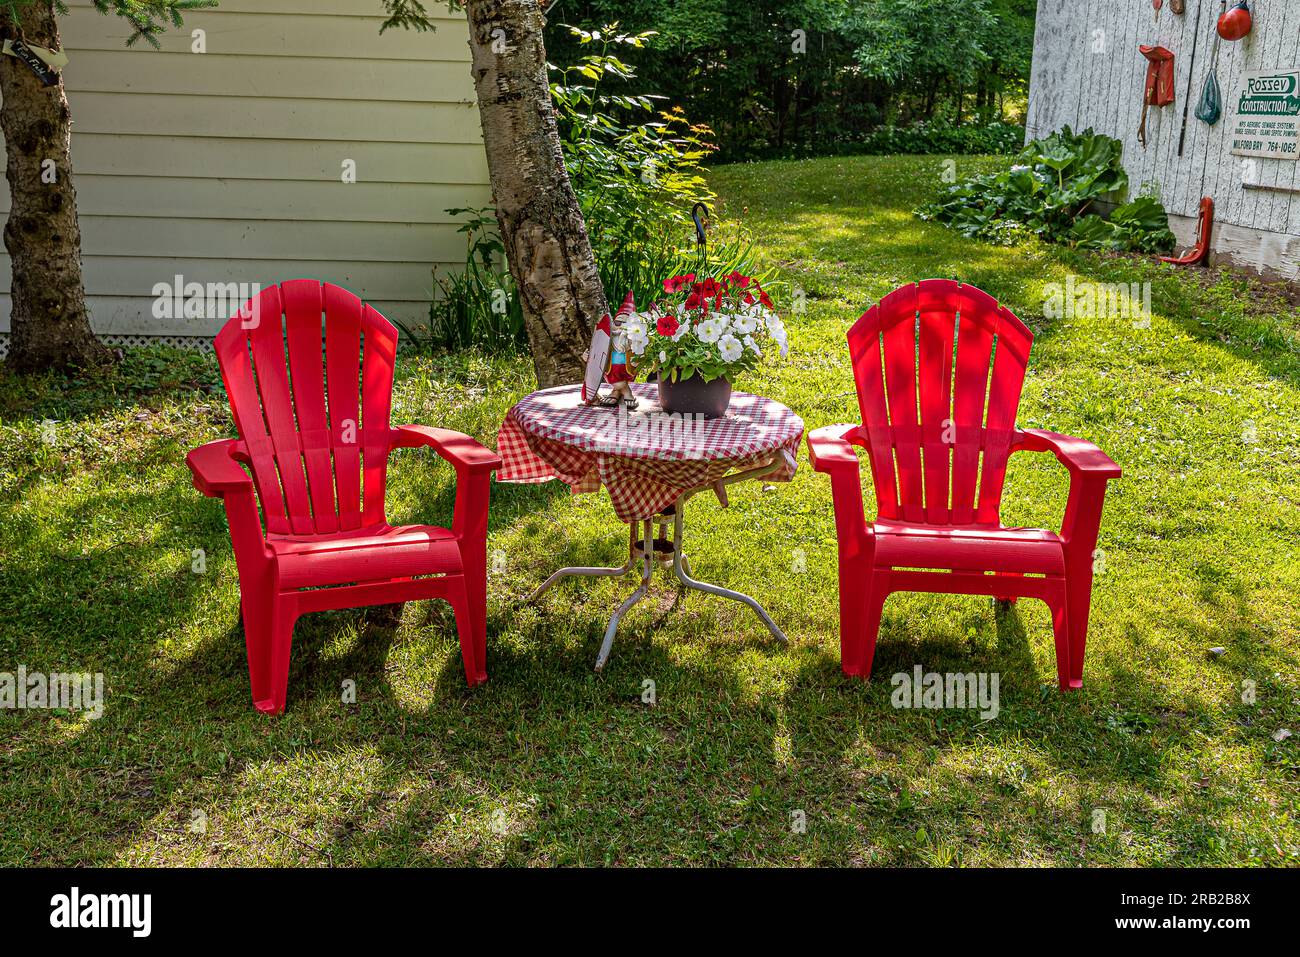 Plastikstühle für Touristen. Eine Blumenflasche auf dem Tisch. Muskoka District - eine Verwaltungseinheit der kanadischen Provinz Ontario. Stockfoto